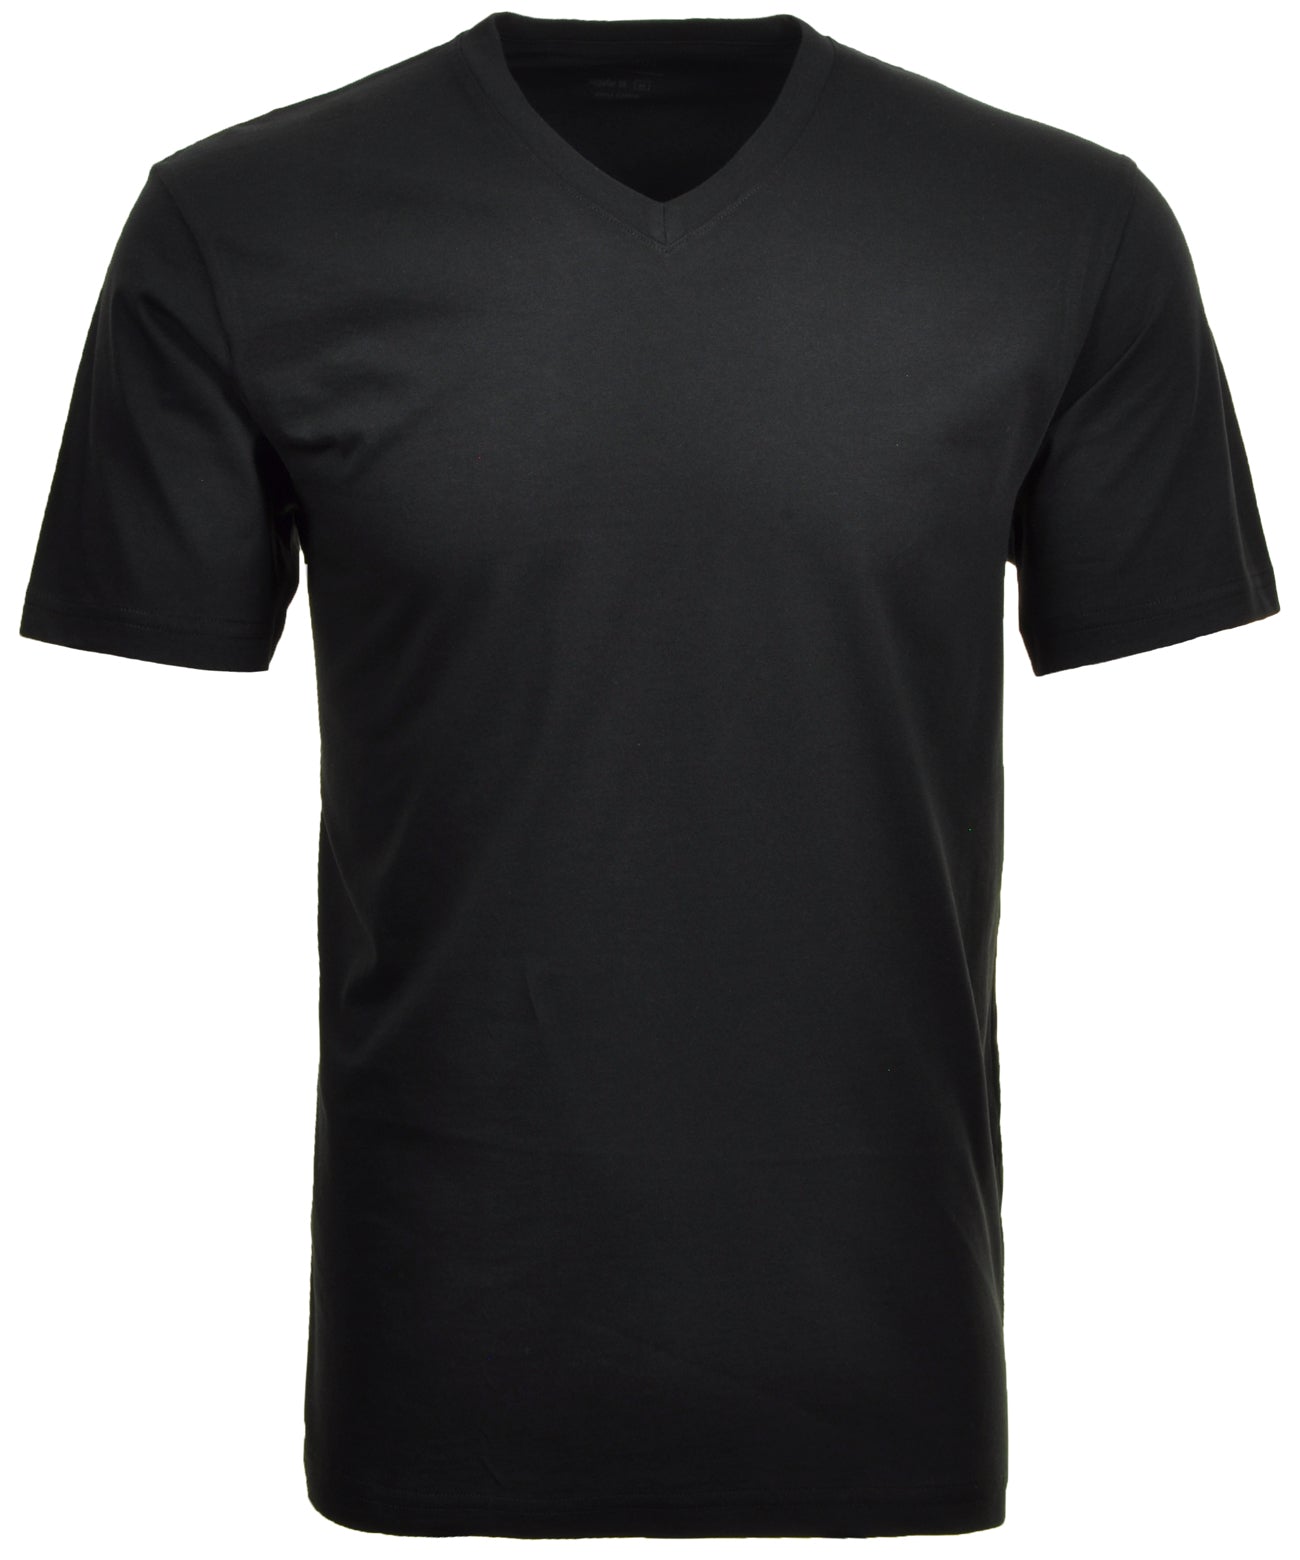 RAGMAN Doppelpack - 2 T-Shirts mit V-Ausschnitt (Schwarz)